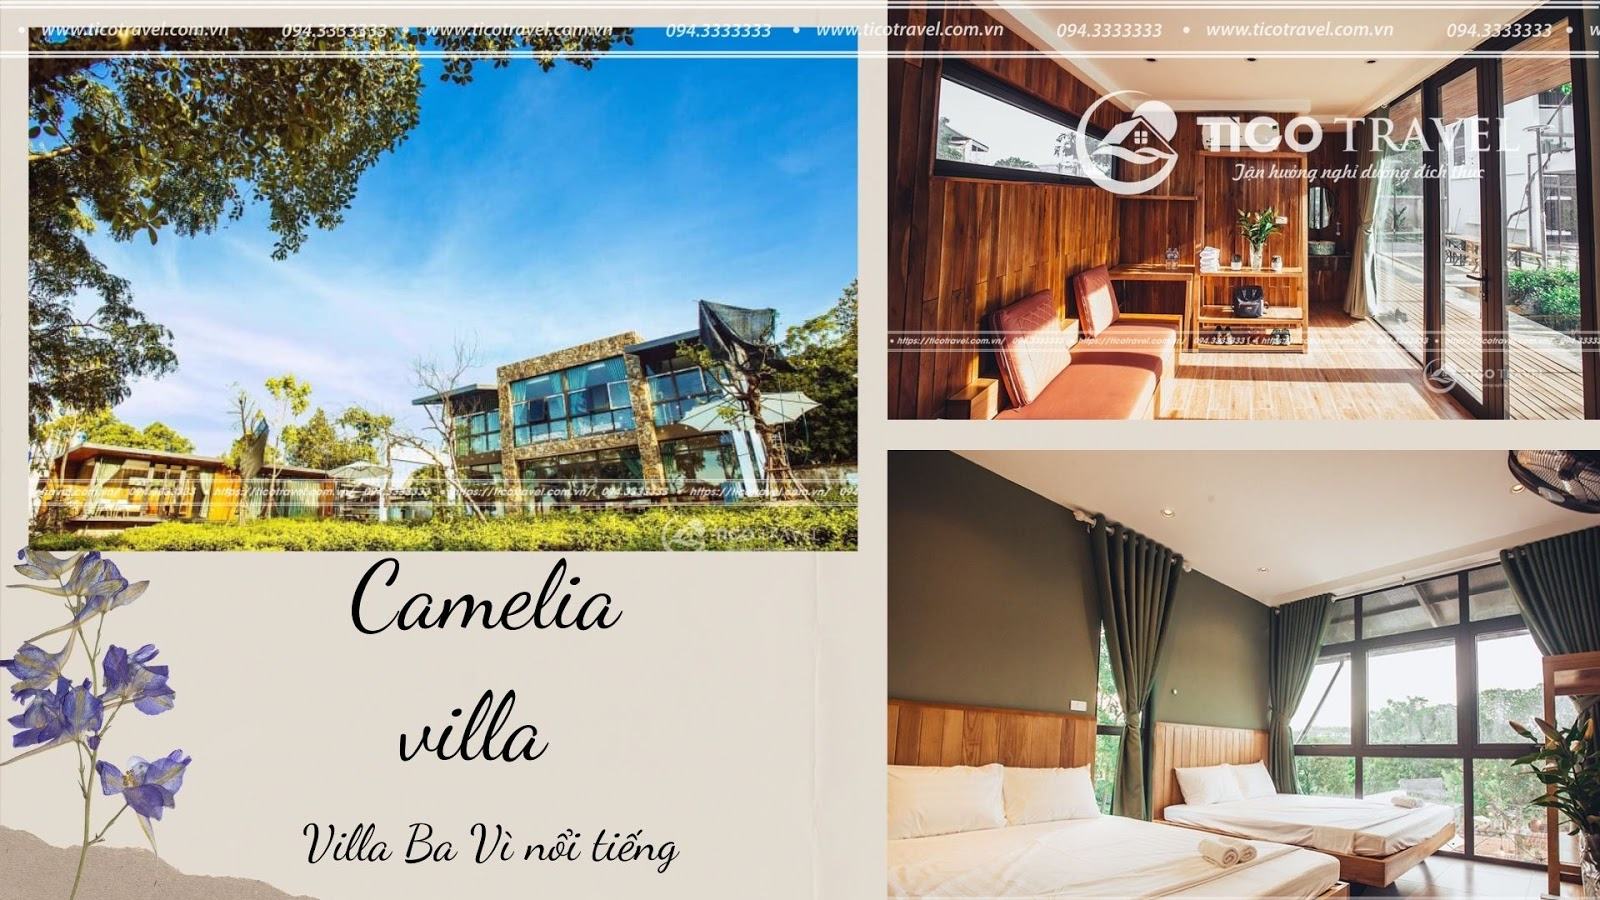 Camellia villa Ba Vì